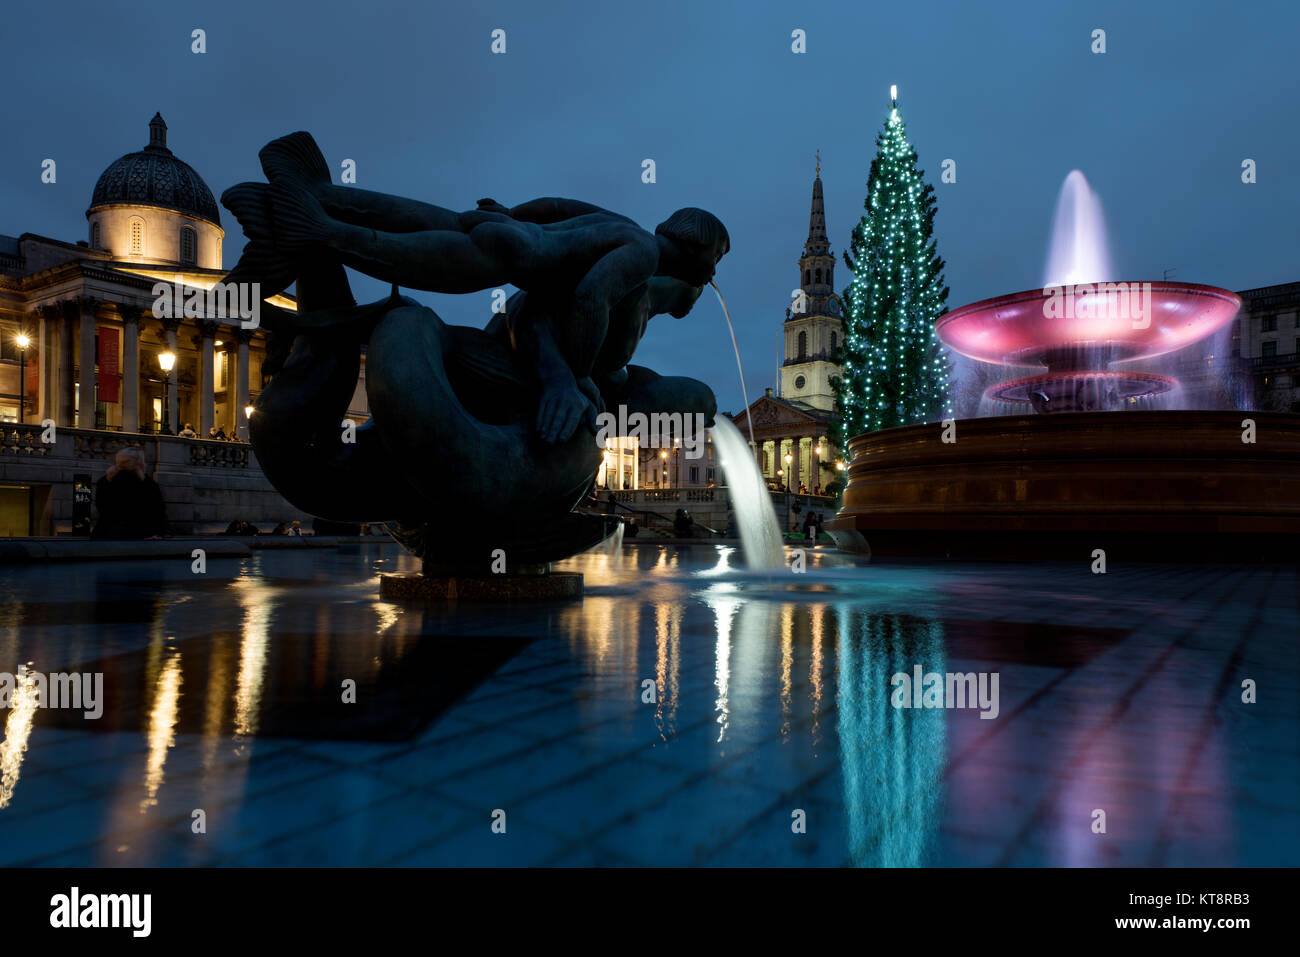 Londres, Royaume-Uni. 21 Décembre, 2017. L'arbre de Noël de Trafalgar Square est un arbre de Noël a fait don à la population de la Grande-Bretagne par la ville d'Oslo, Norvège chaque année depuis 1947. L'arborescence s'affiche à Trafalgar Square du début Décembre jusqu'au 6 janvier. L'arbre de Noël de Trafalgar Square a été un don annuel à la population de la Grande-Bretagne par la ville d'Oslo en signe de gratitude pour l'appui britannique à la Norvège pendant la Seconde Guerre mondiale. Crédit : BRIAN HARRIS/Alamy Live News Banque D'Images